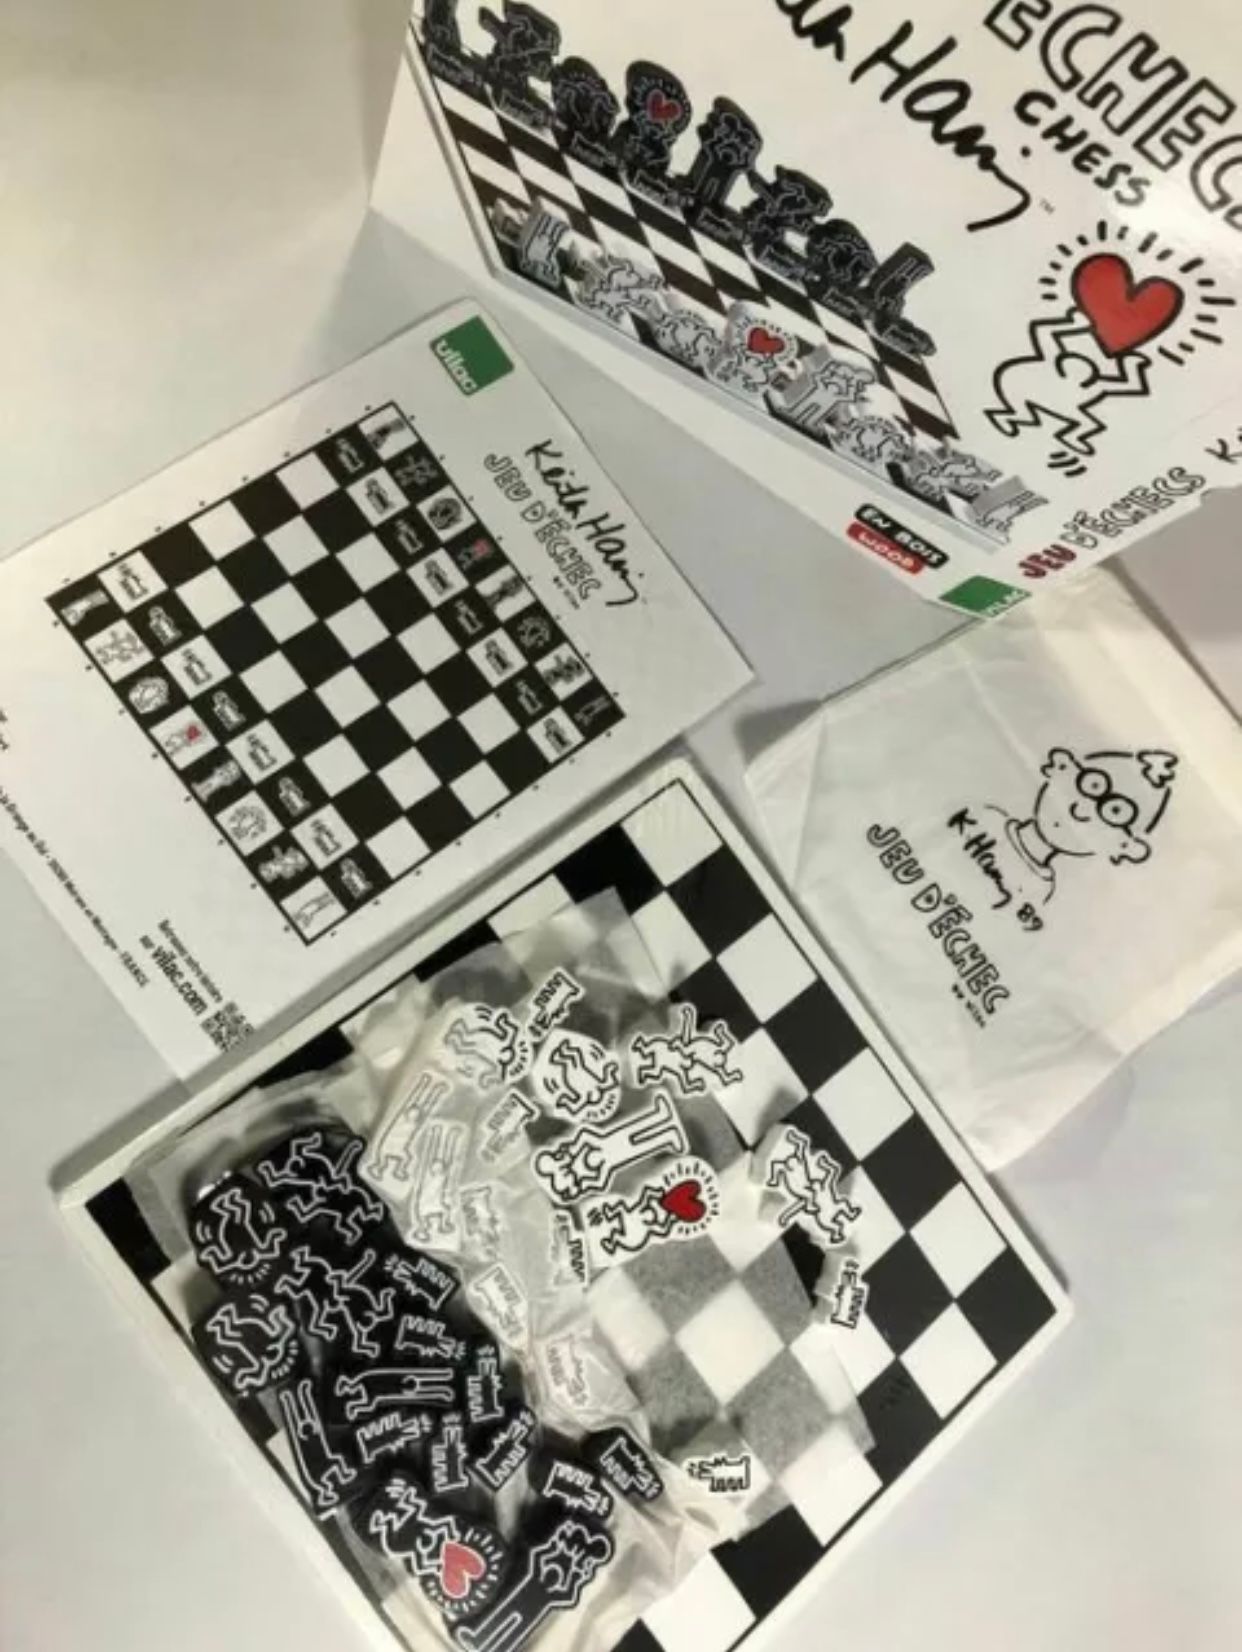 Null 法国维拉克公司的 "凯斯-哈林 "象棋游戏。纽约现代艺术博物馆独家报道

车削和涂漆的木材，织物袋

由纽约凯斯-哈林基金会授权。

艺术家的印章

&hellip;